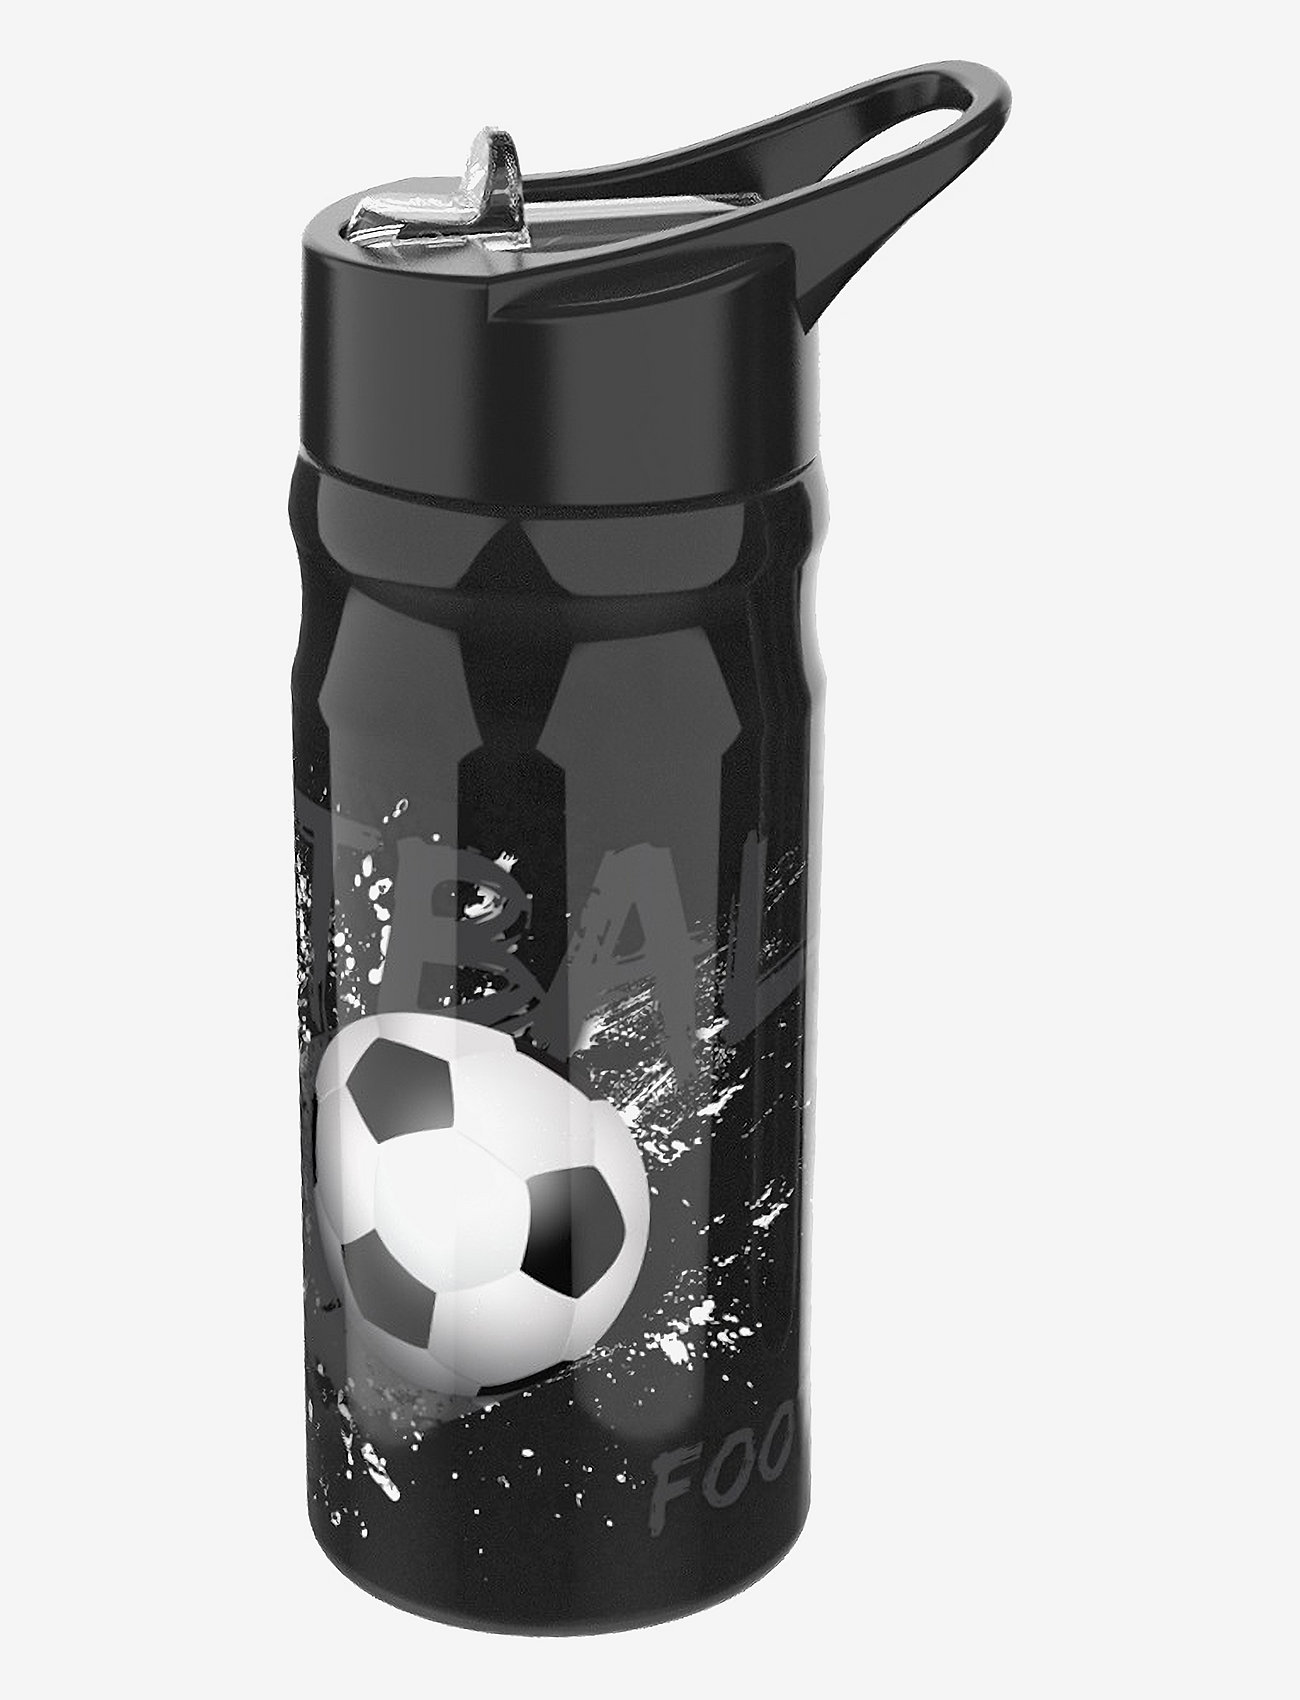 Euromic - VALIANT FOOTBALL water bottle - black - 0